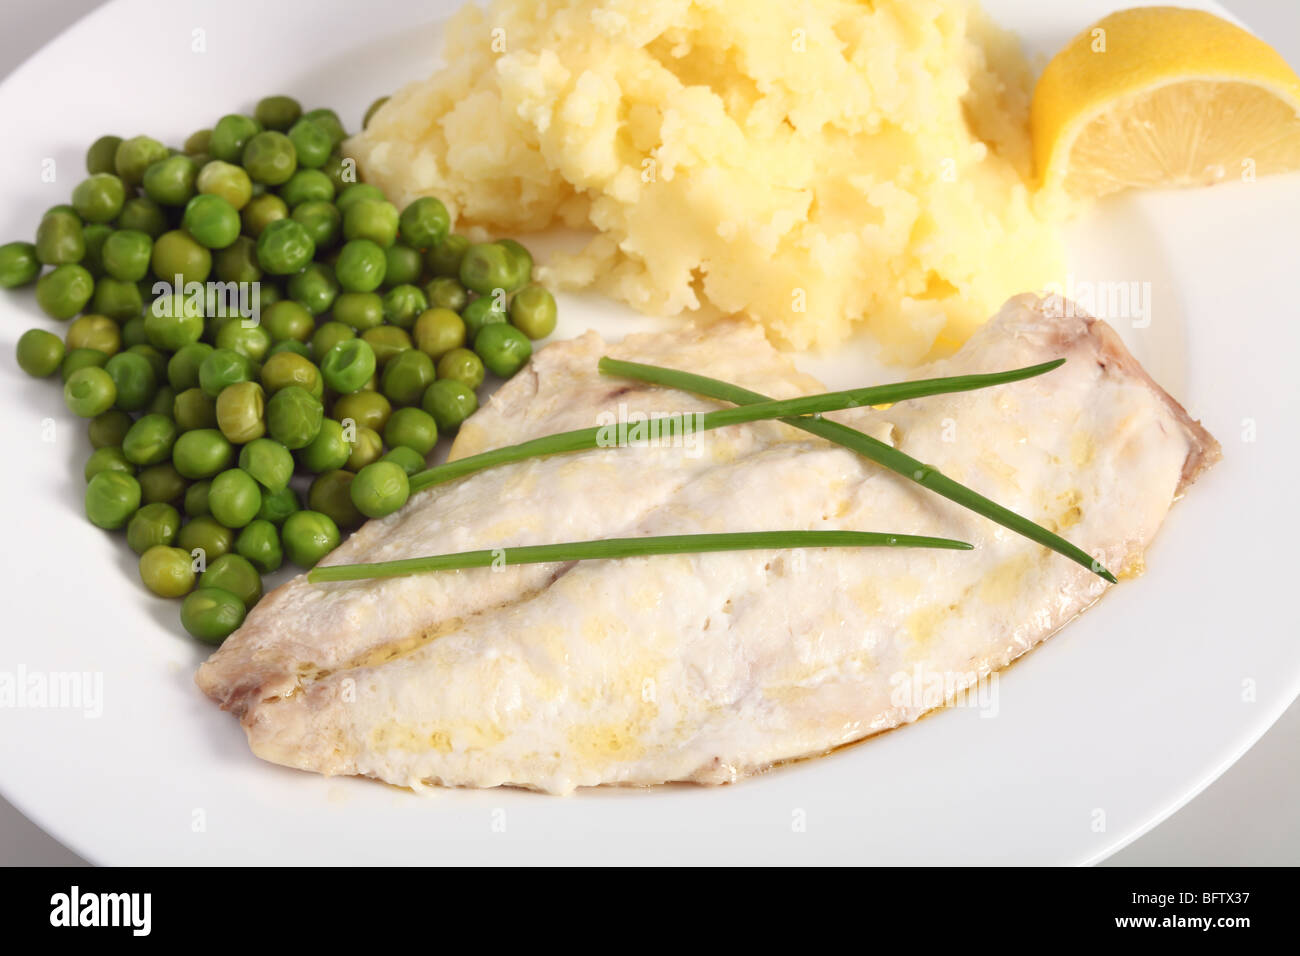 Eine gesunde Mahlzeit gebackener Fisch mit Kartoffelpüree, Erbsen gekocht und einen Keil von Zitrone Stockfoto